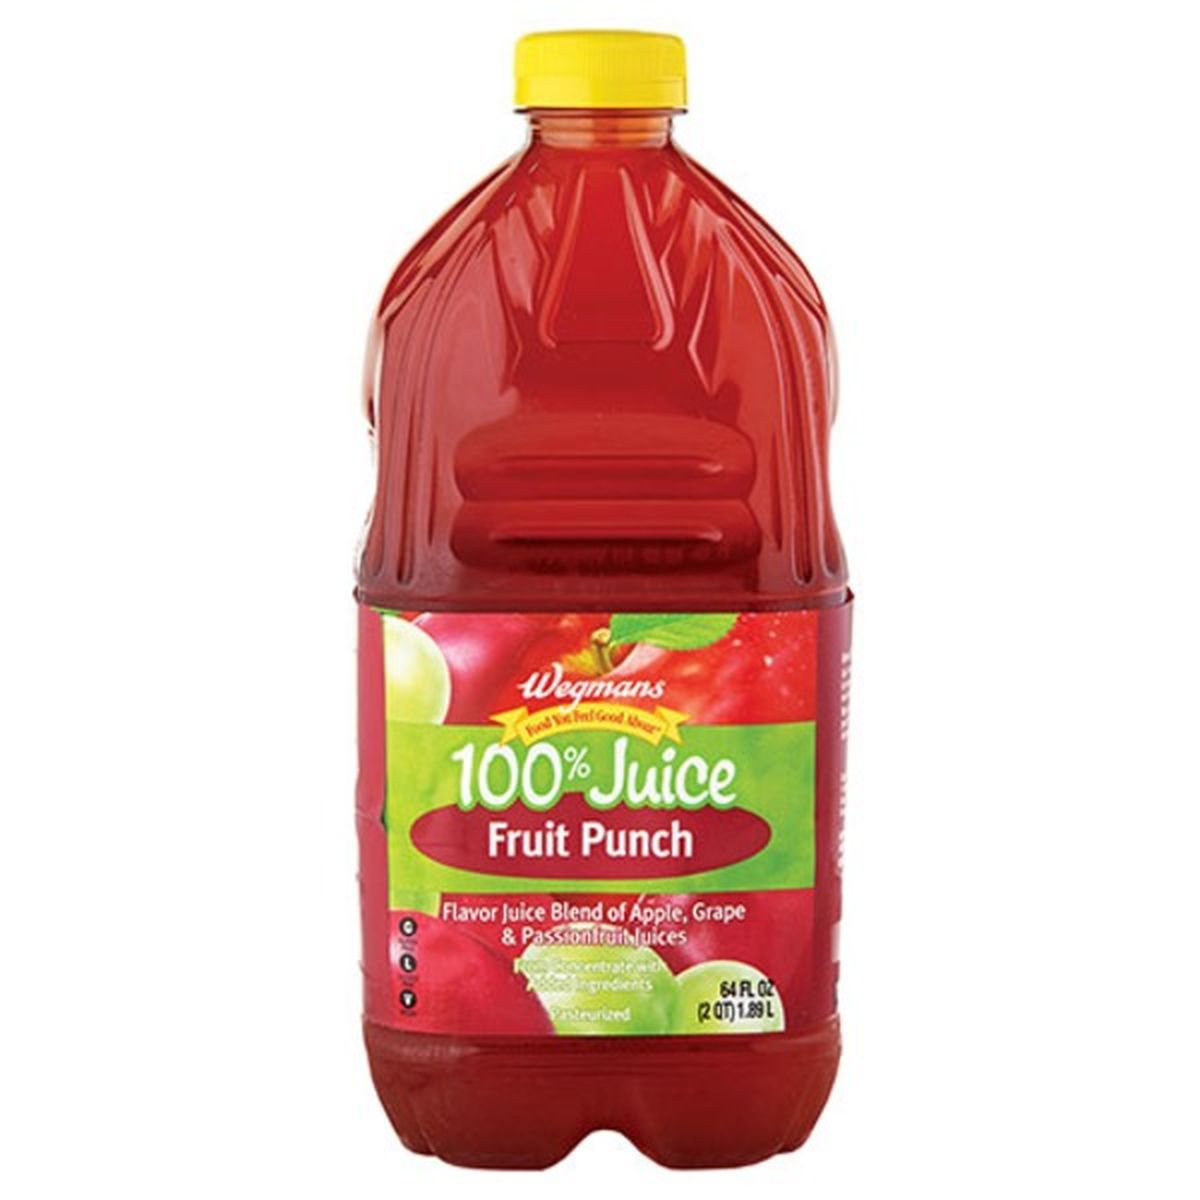 Calories in Wegmans 100% Juice Fruit Punch